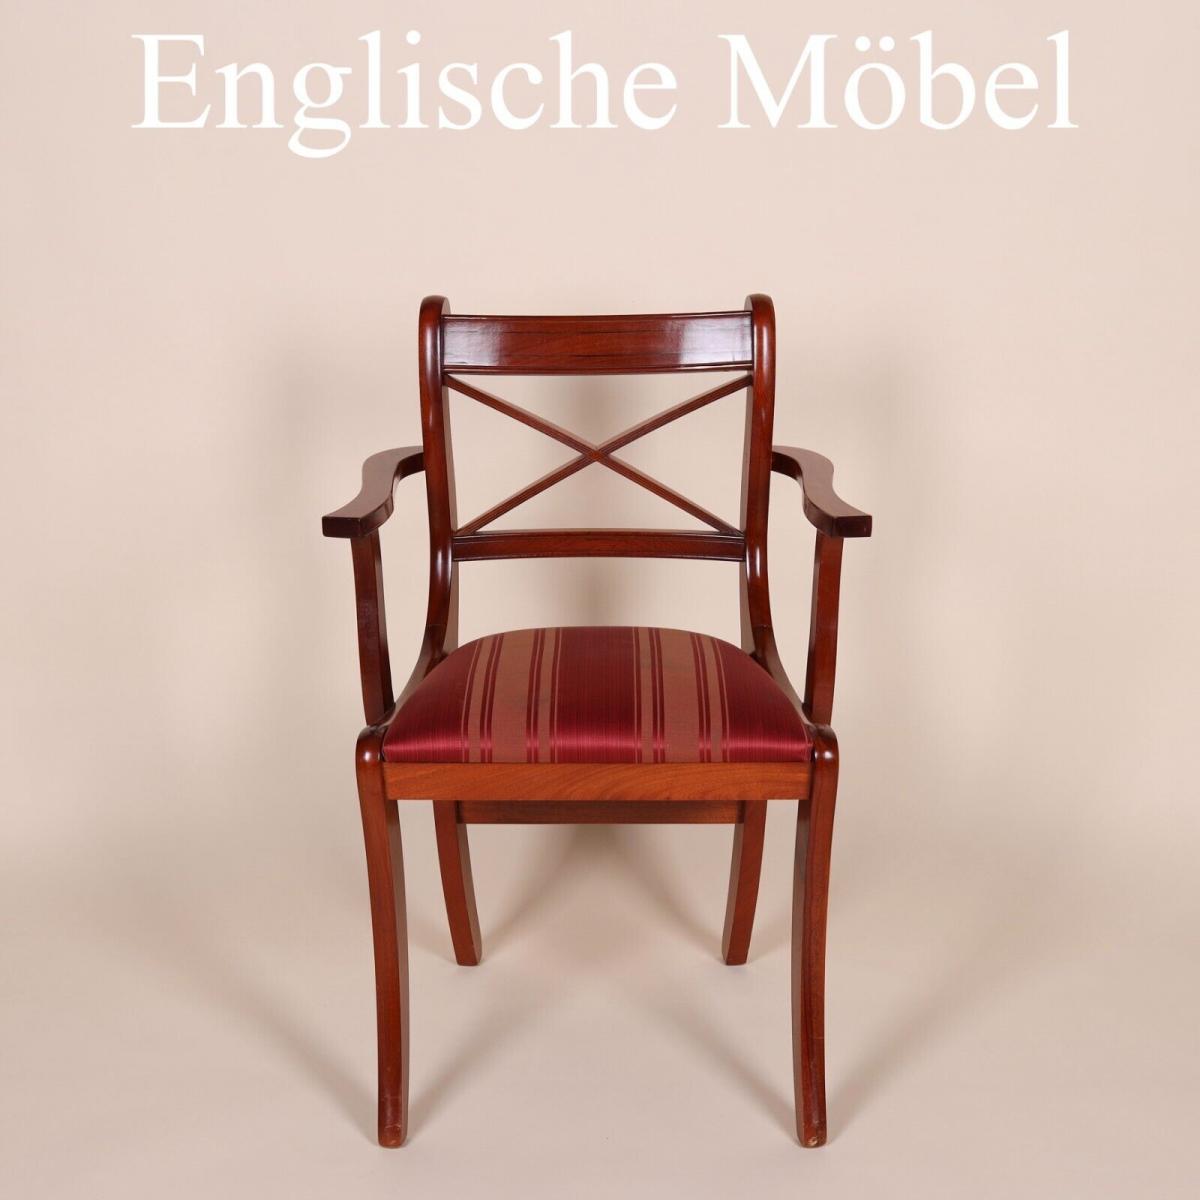 Englische M�bel original Esszimmer Esstisch Stuhl St�hle Cross Stick Armlehne UK 0